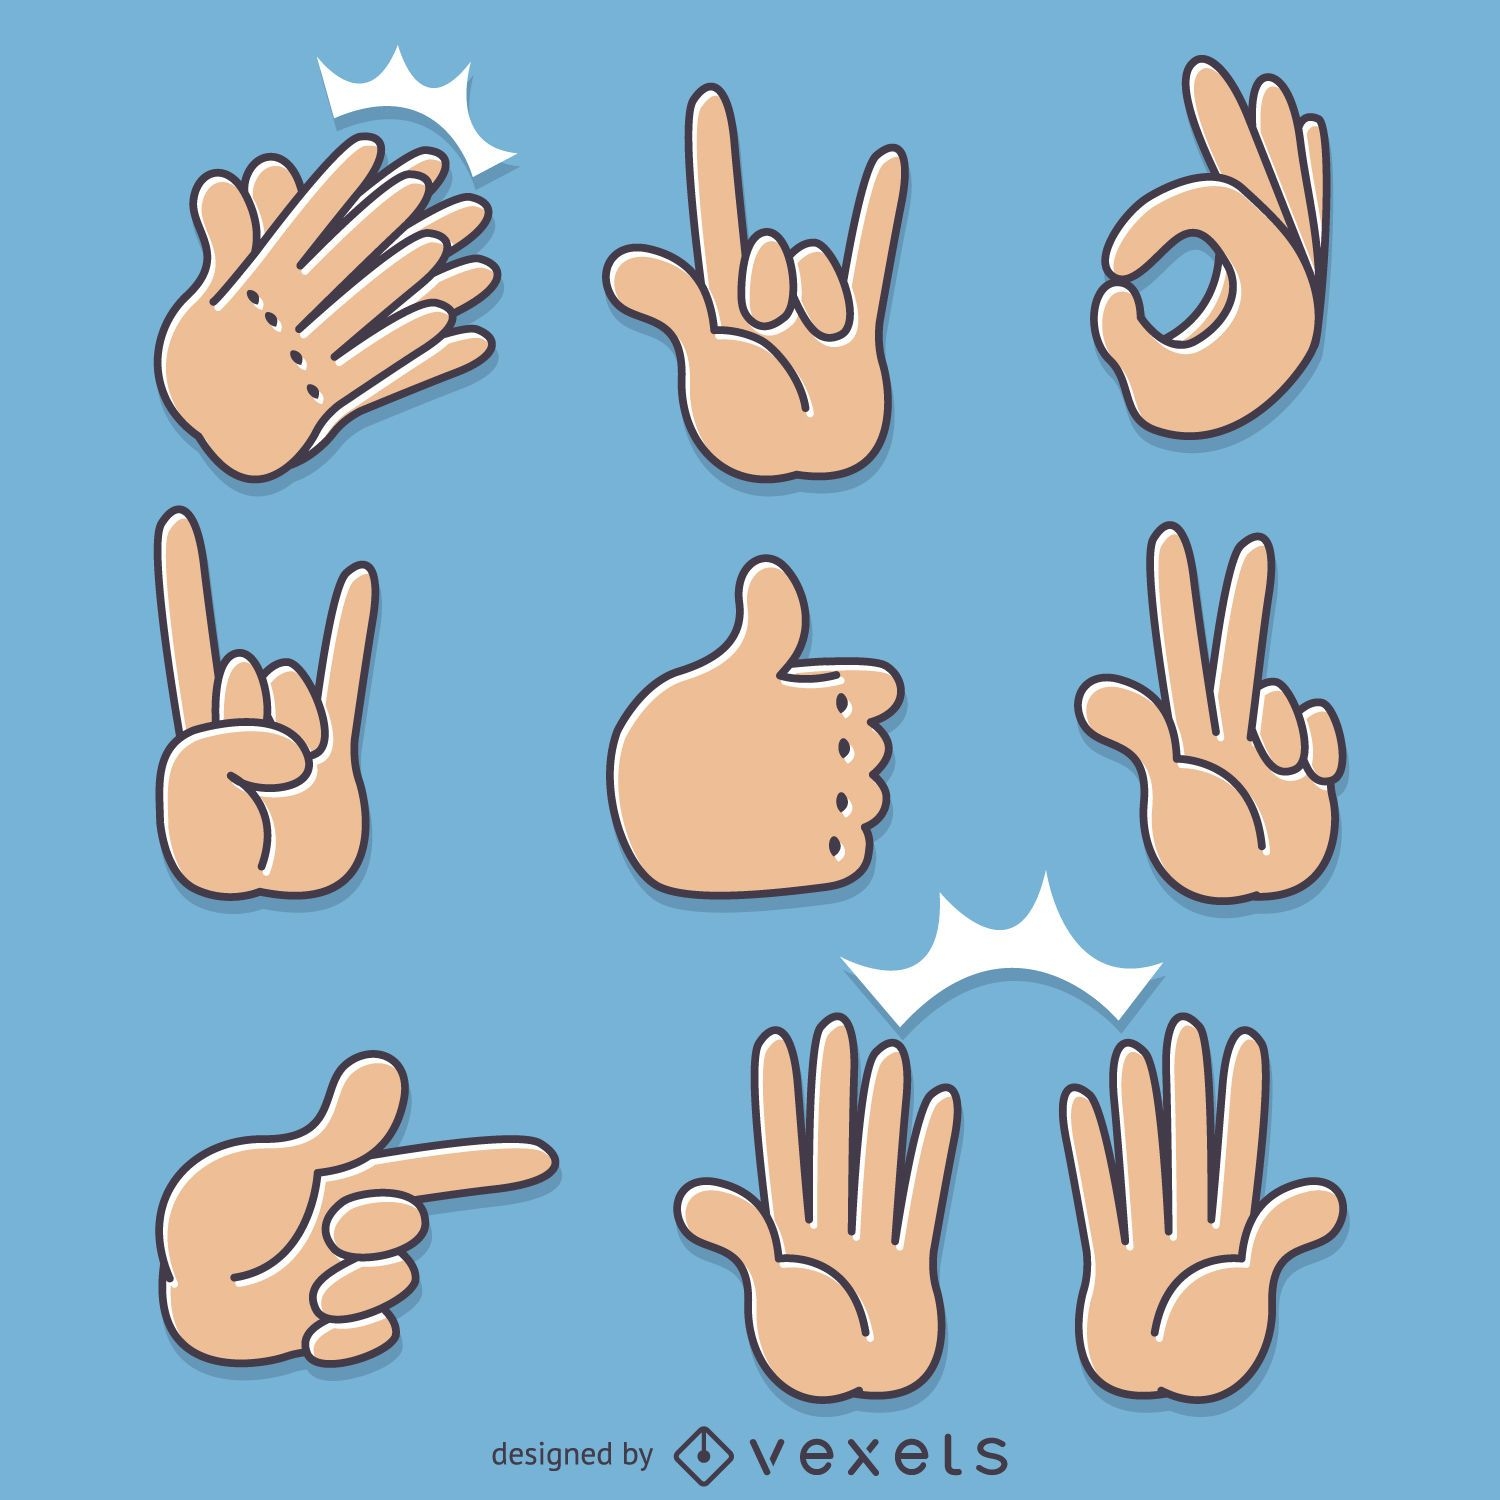 Ilustraciones de hand sign gestures